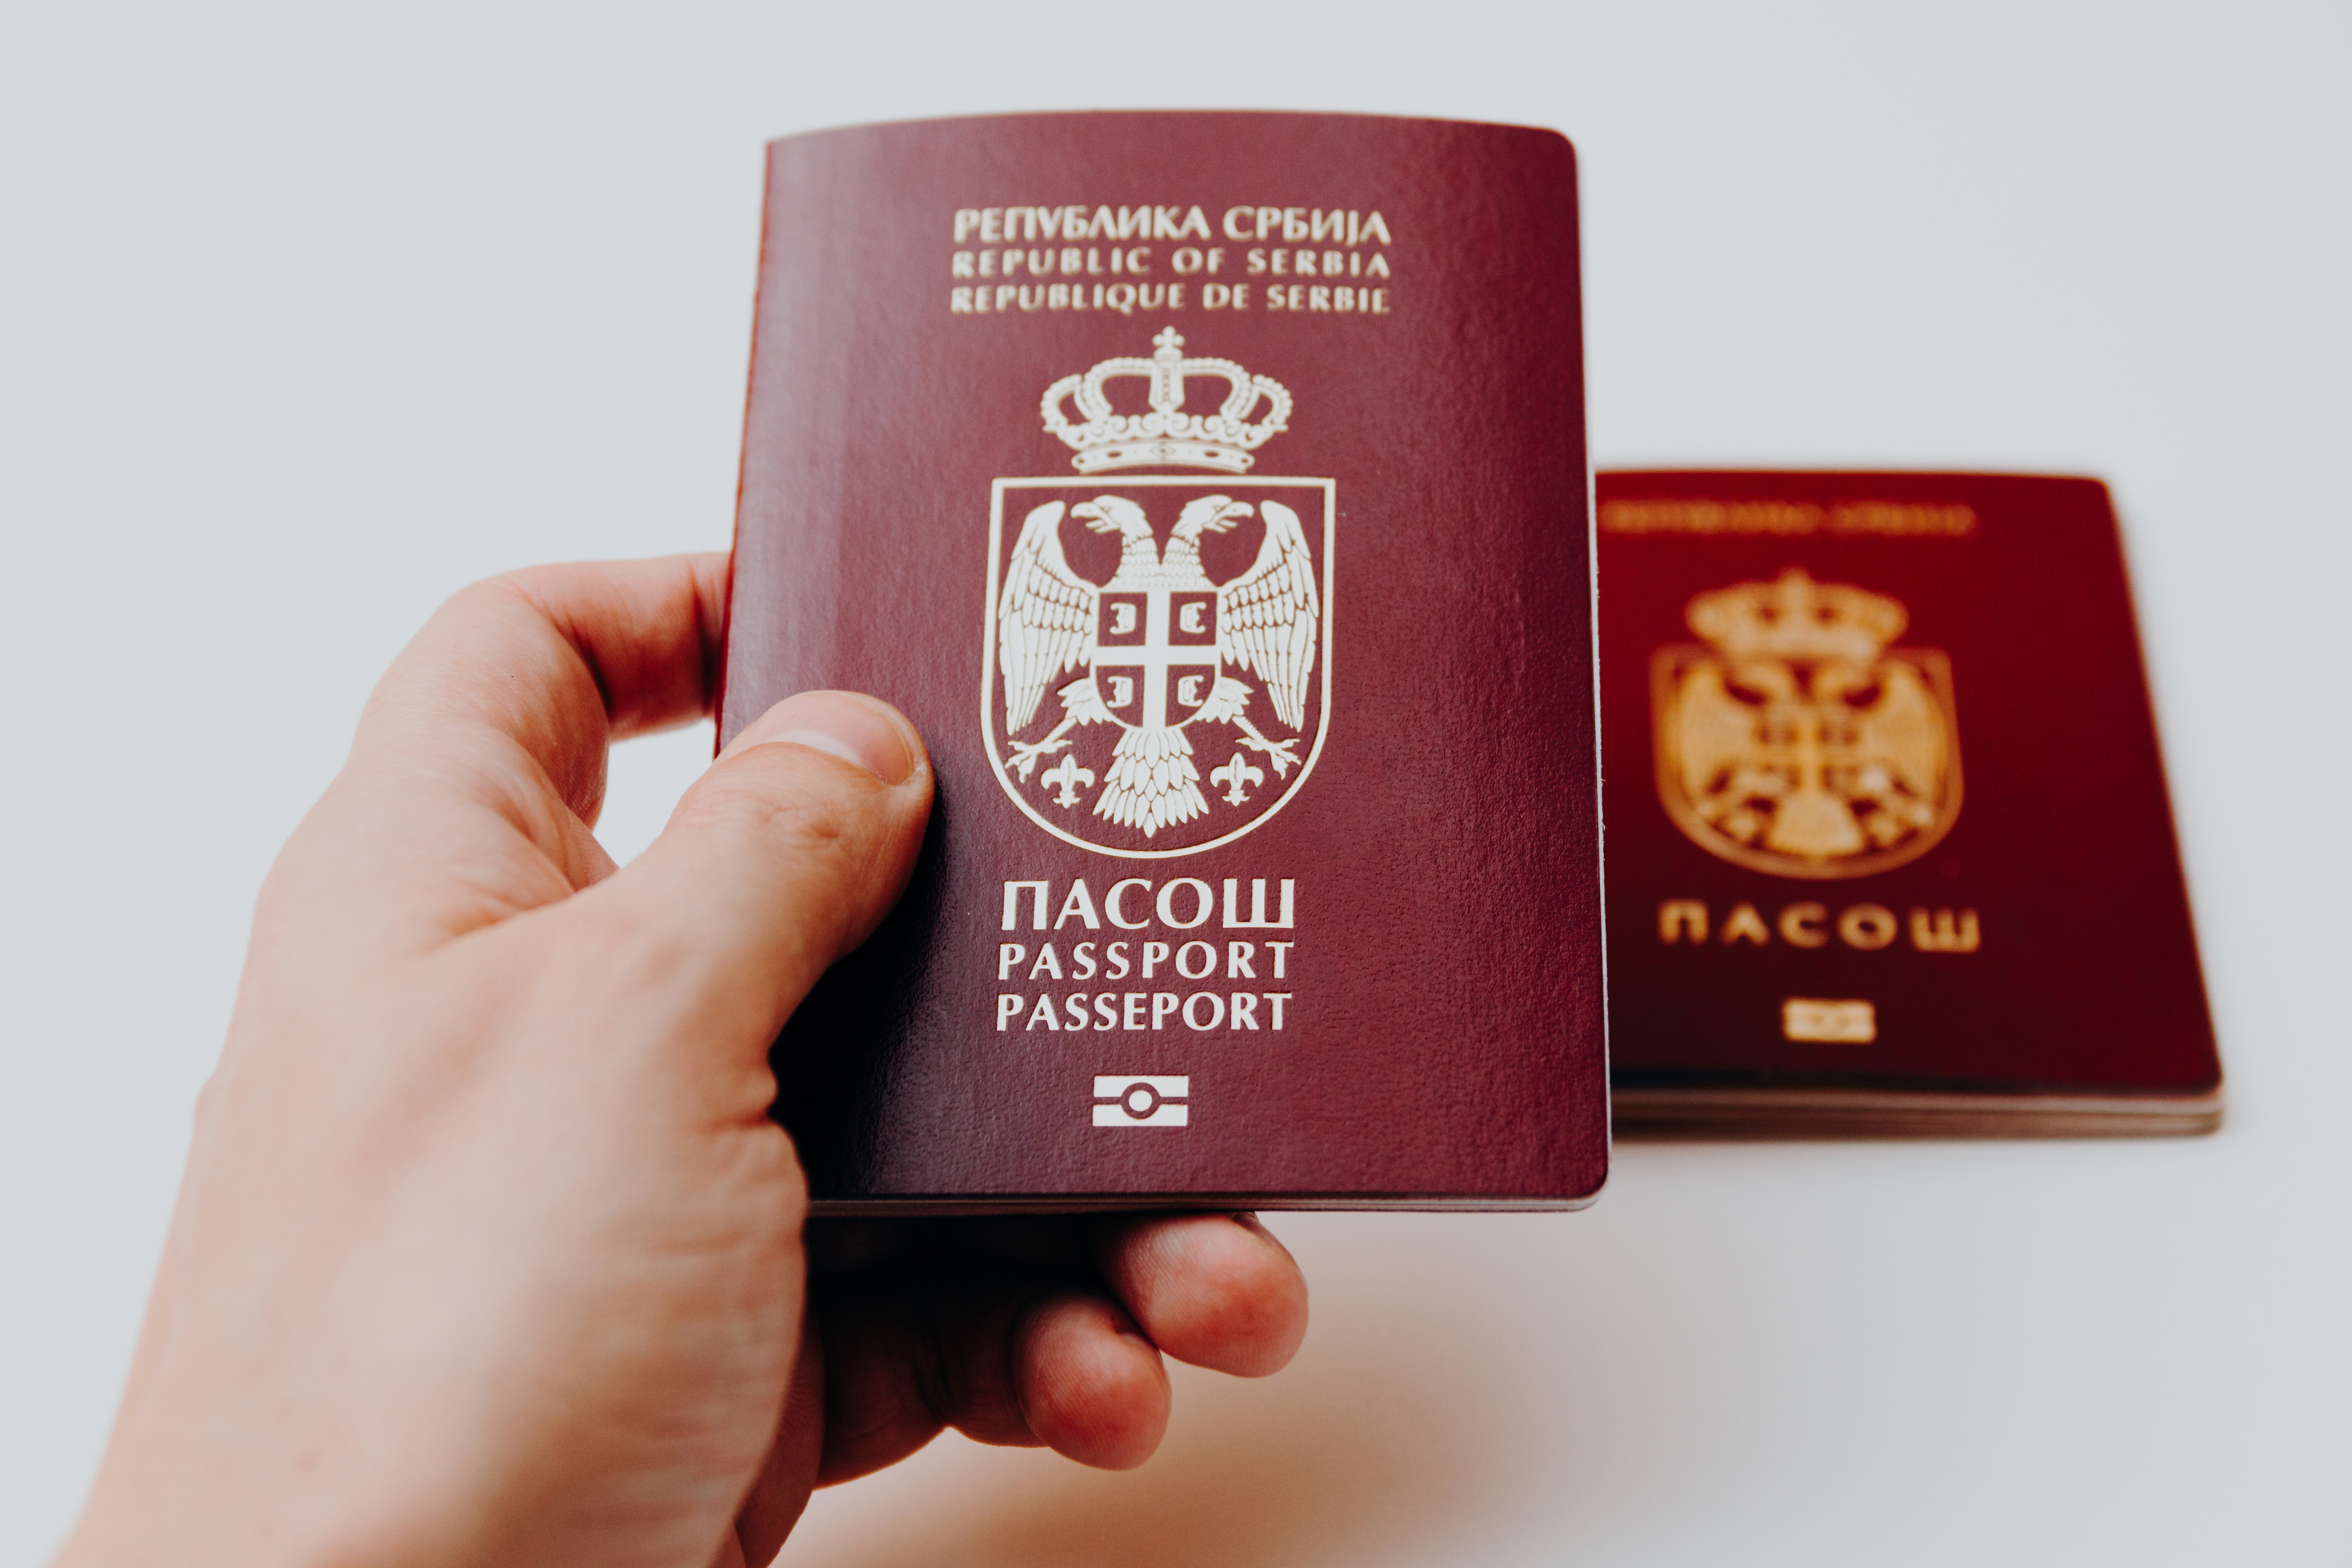 Паспорт Сербии, гражданство которой можно получить